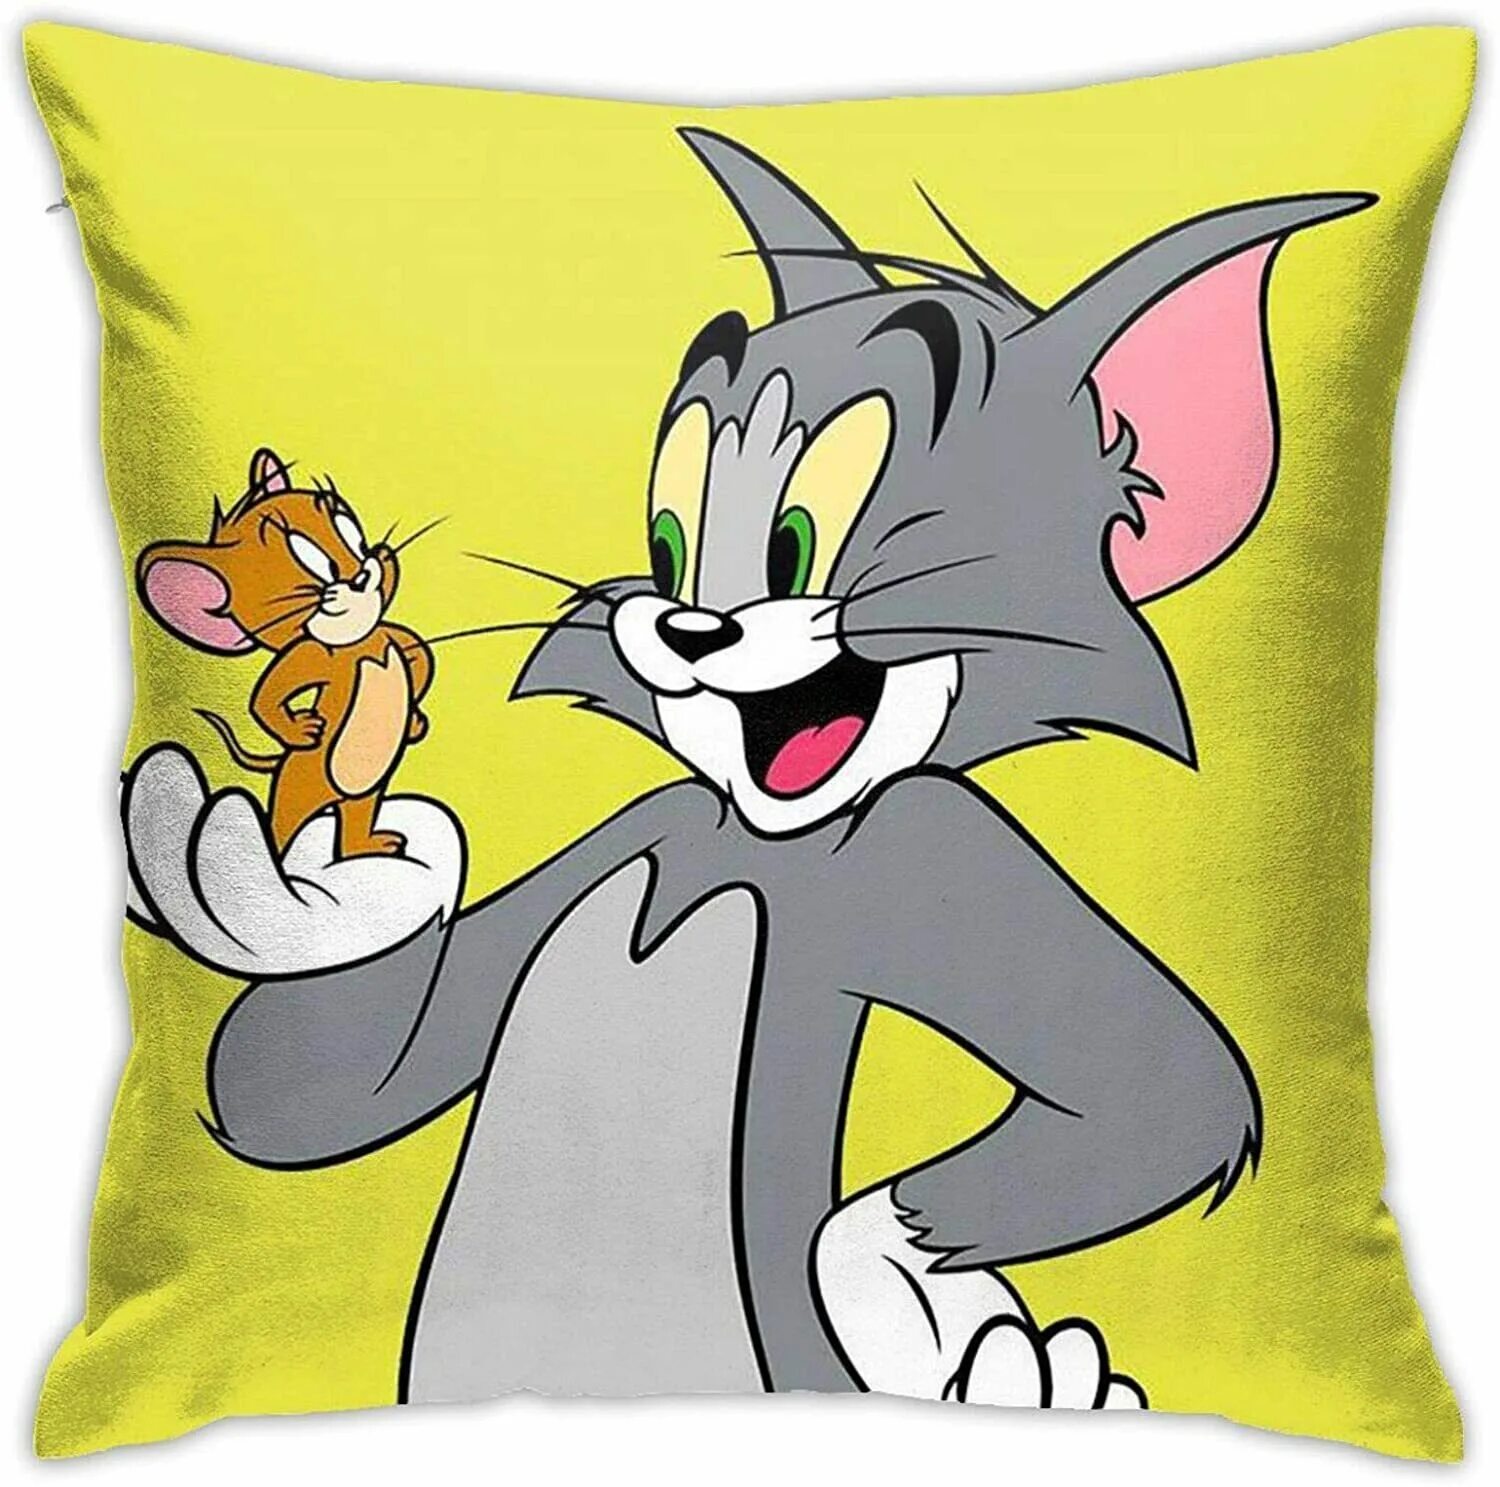 Jerry том и джерри. Tom and Jerry. Том и Джерри Джерри. Том из том и Джерри. Том и Джерри герои.